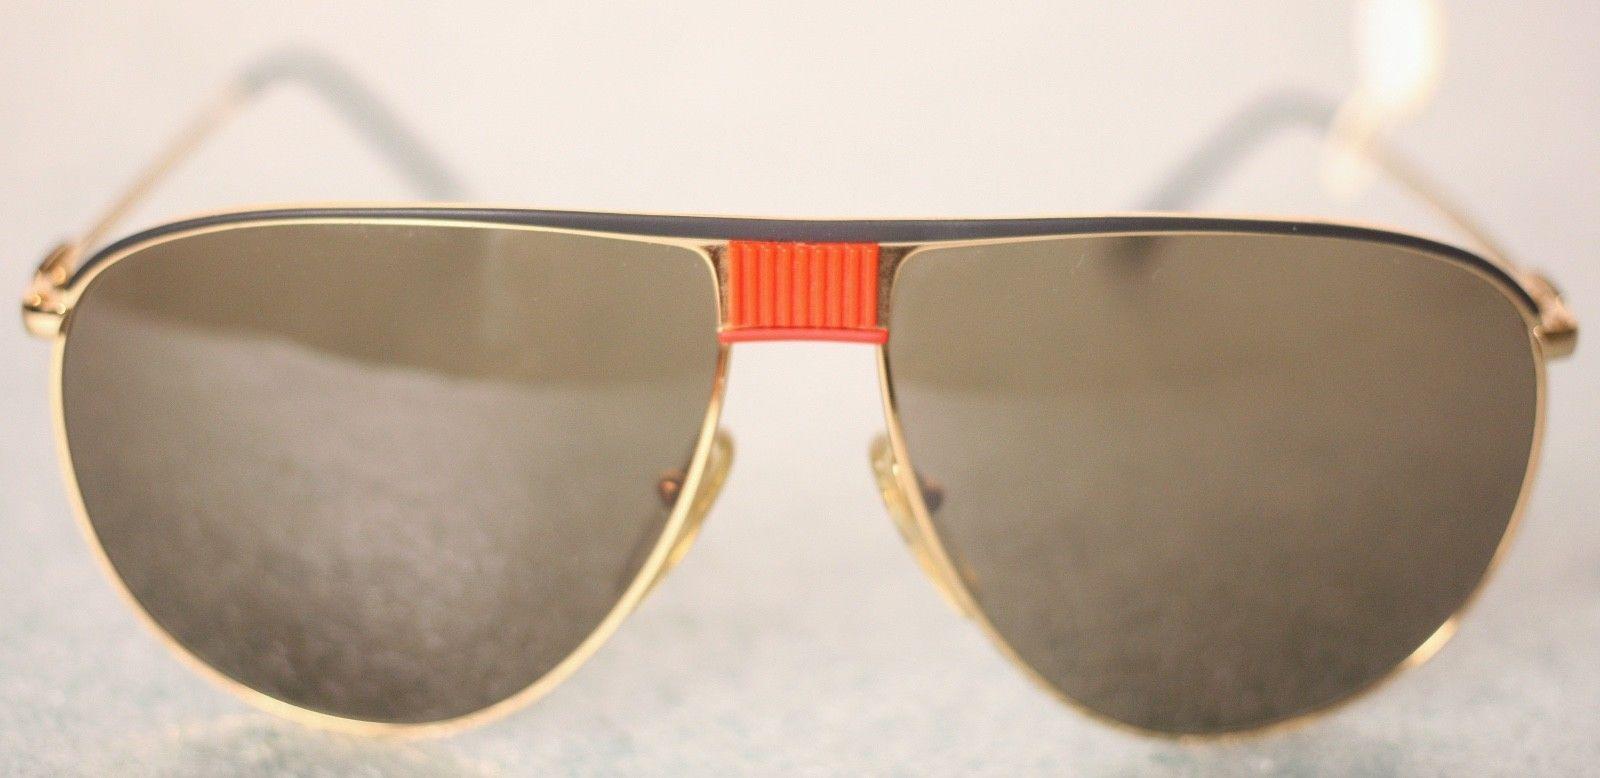 vintage lacoste sunglasses